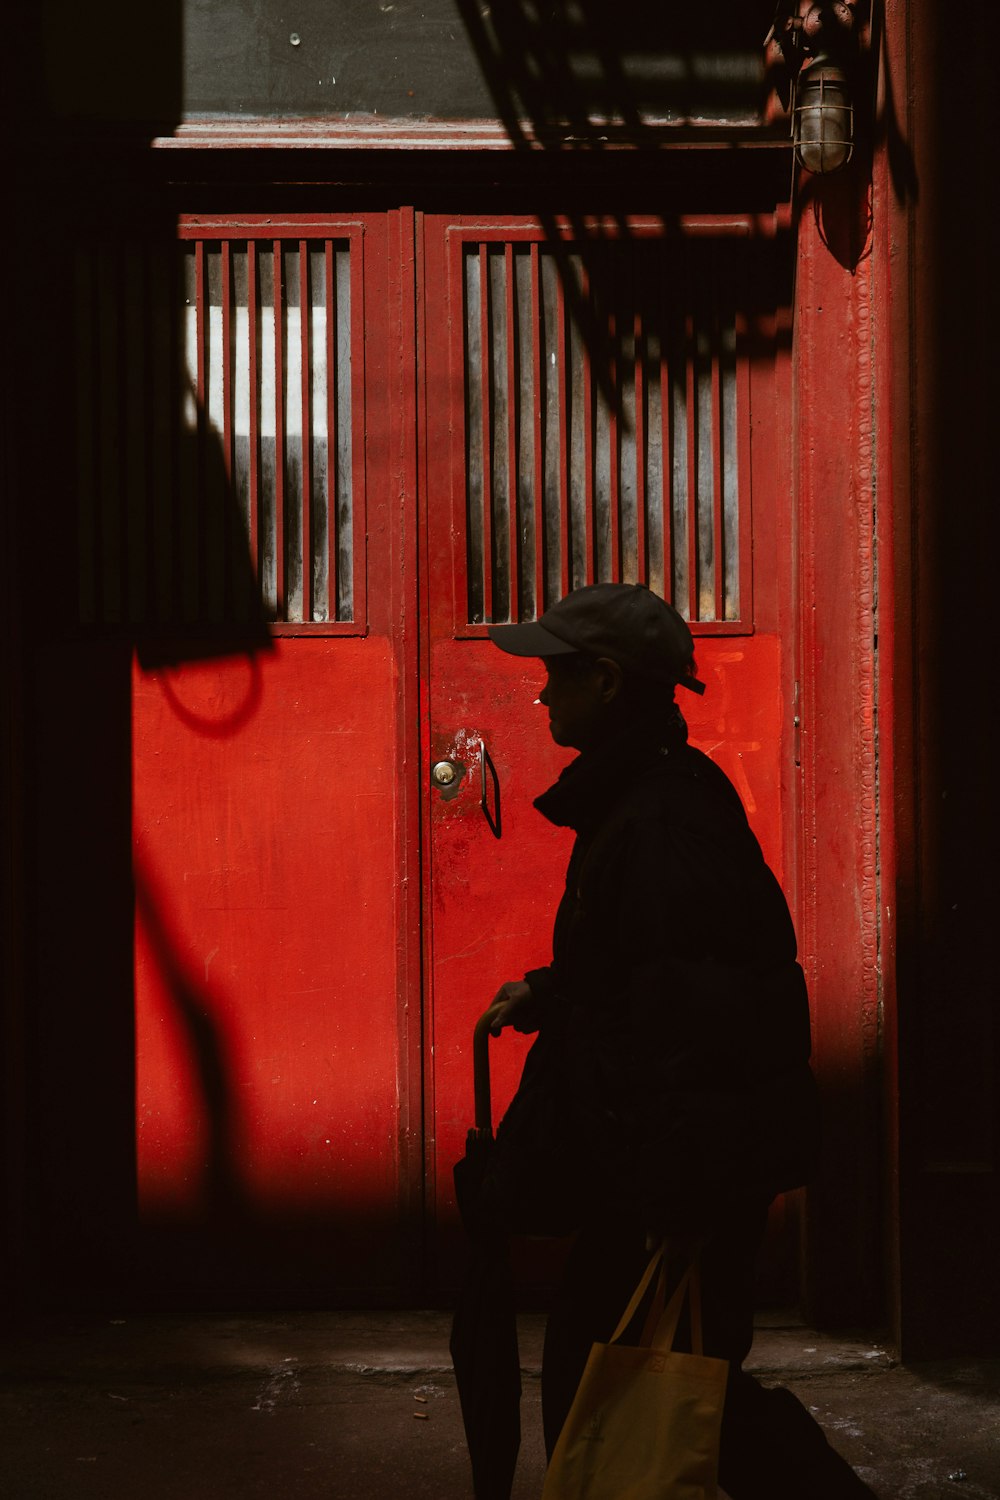 silhouette of person walking in front of door